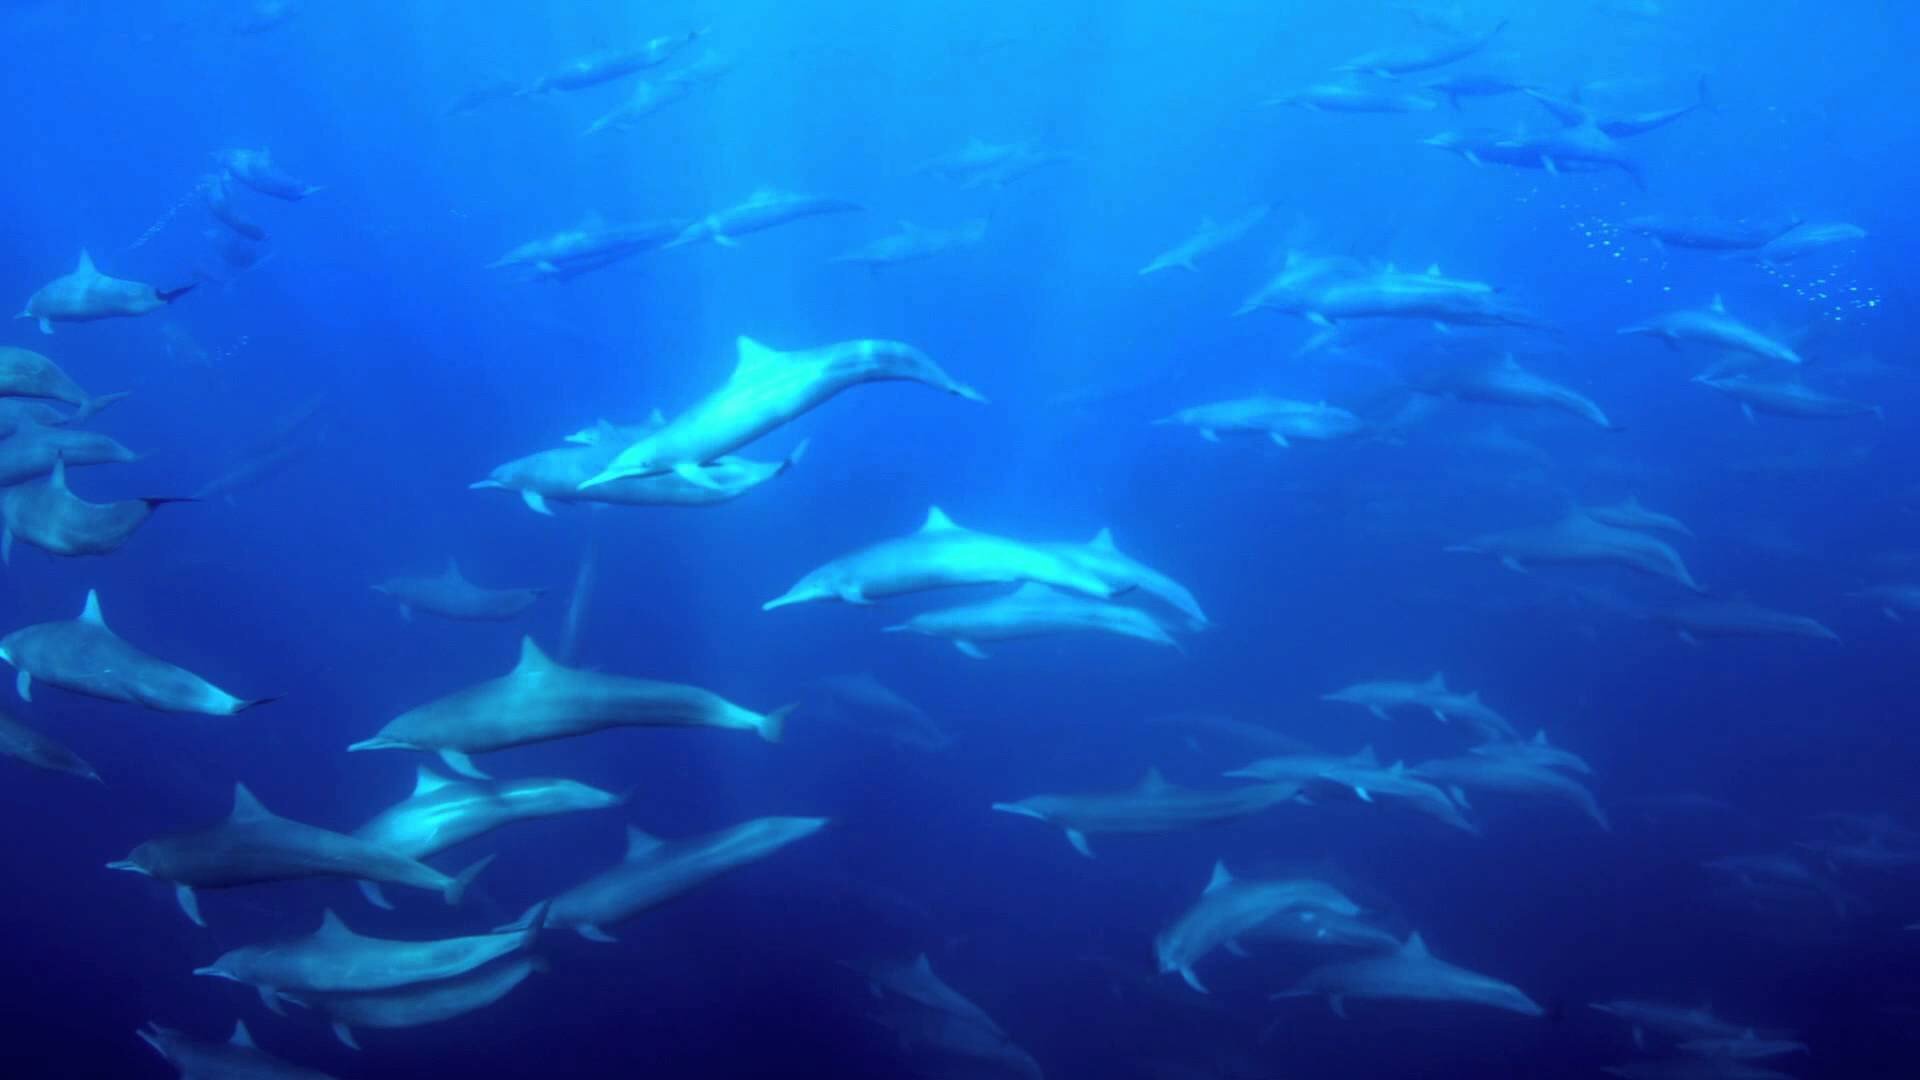 Песни дельфины уплывают в океан